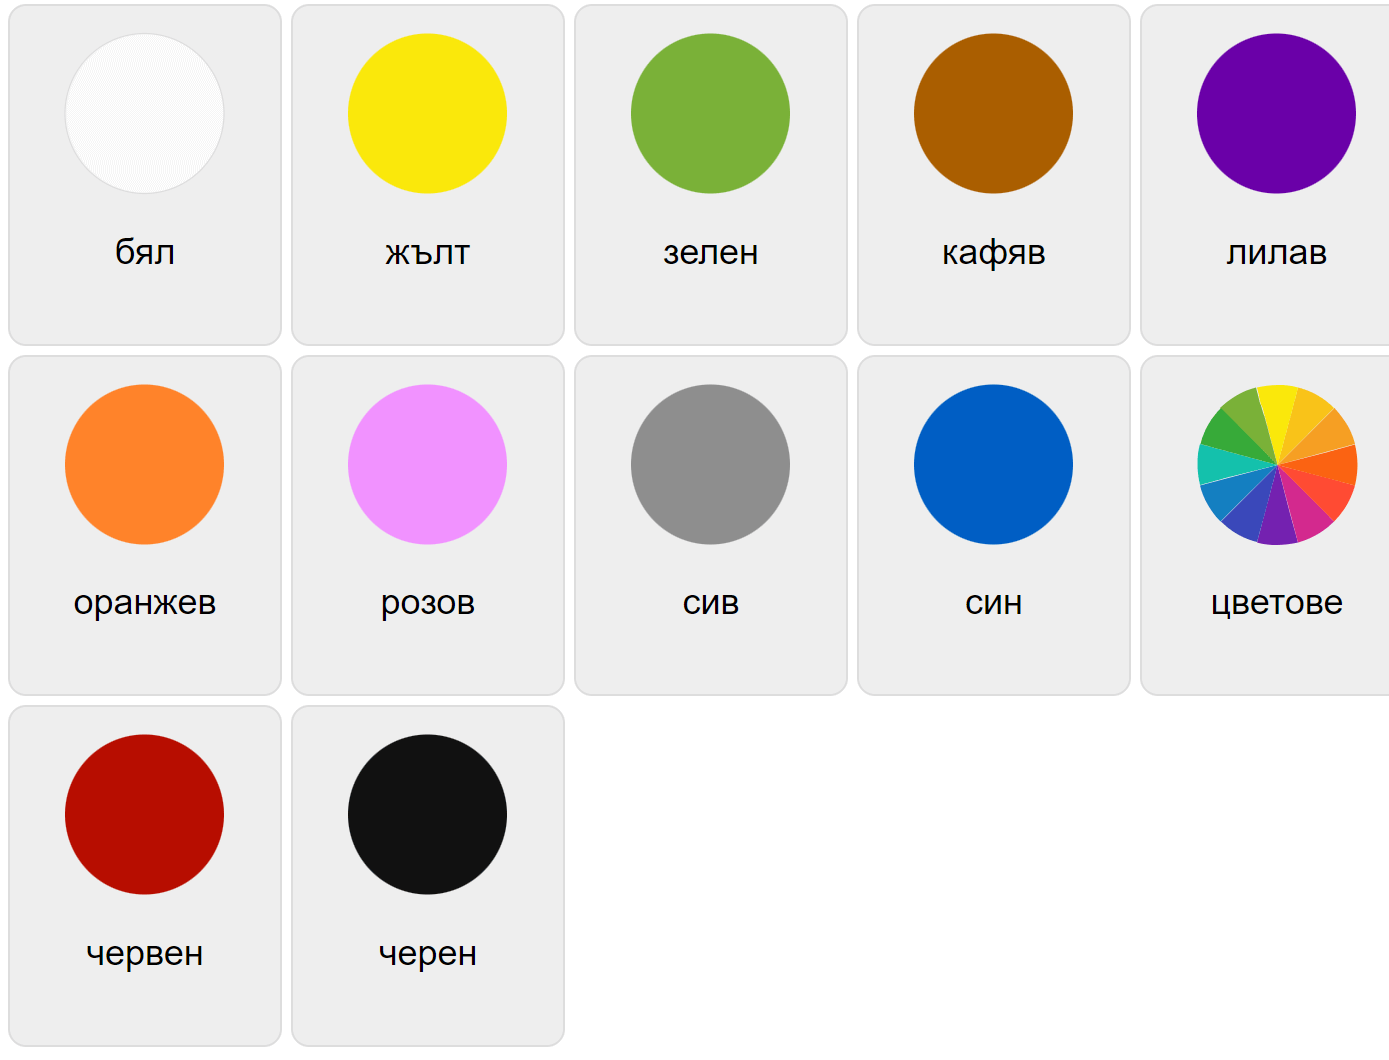 Colores en búlgaro